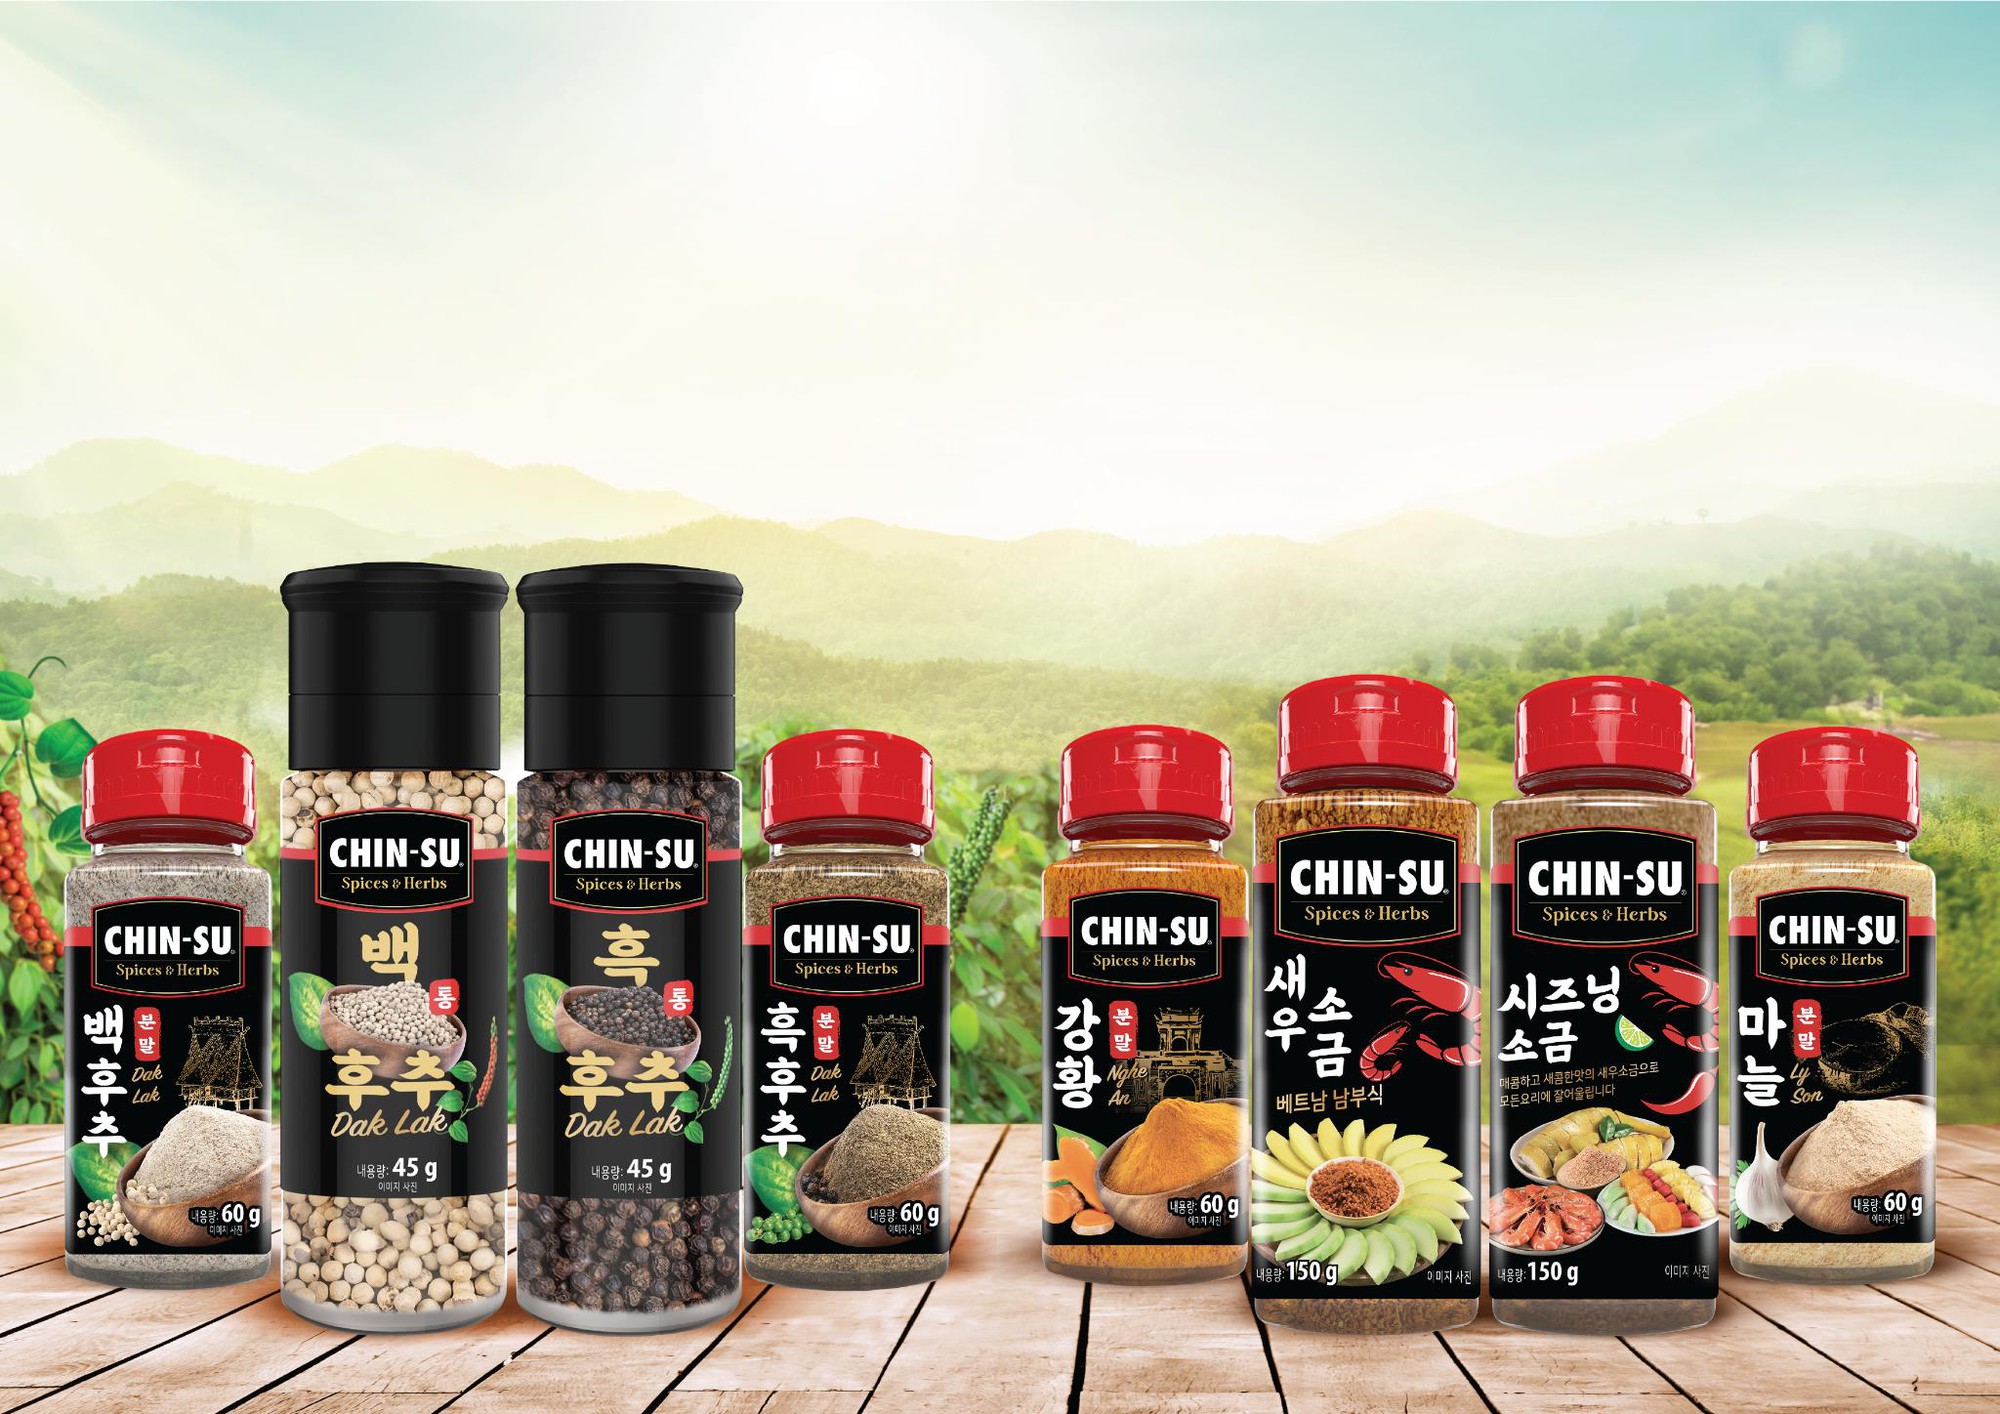 Từ Nhật Bản đến Hàn Quốc, Bộ gia vị hạt và bột đặc sản Chin-su liên tục ghi dấu ấn, chinh phục người dùng- Ảnh 2.